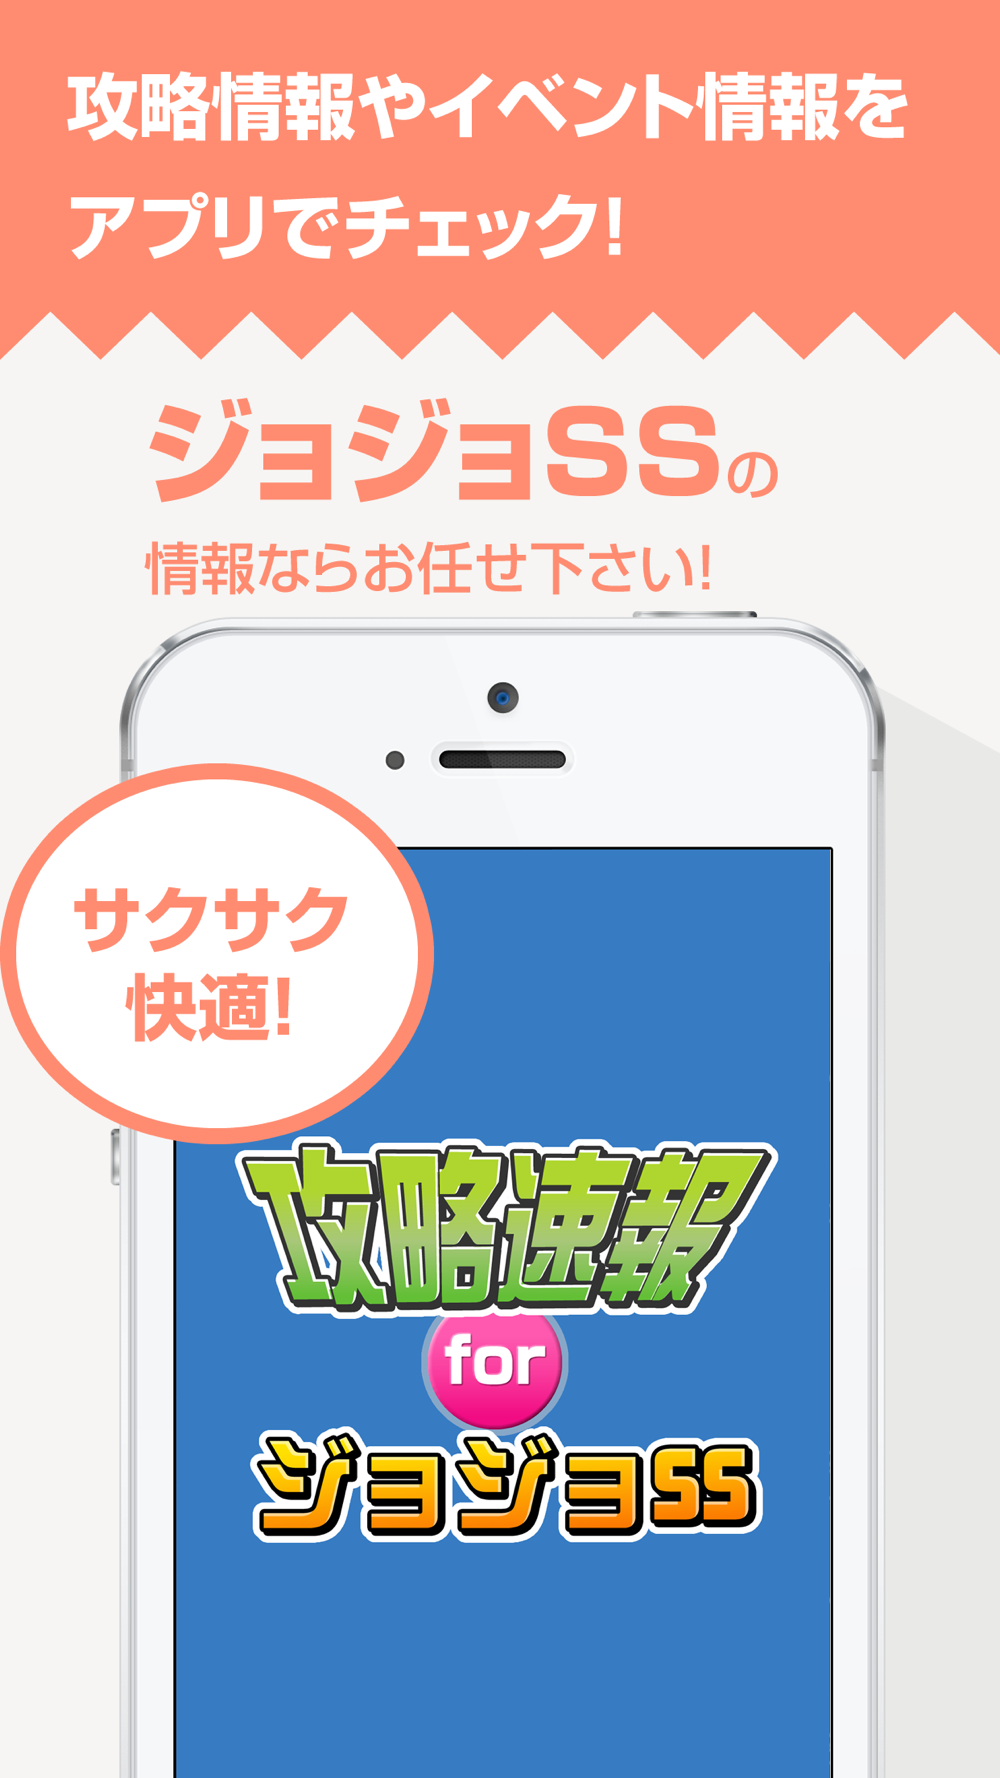 攻略まとめニュース速報 For ジョジョss ジョジョの奇妙な冒険 スターダストシューターズ Free Download App For Iphone Steprimo Com